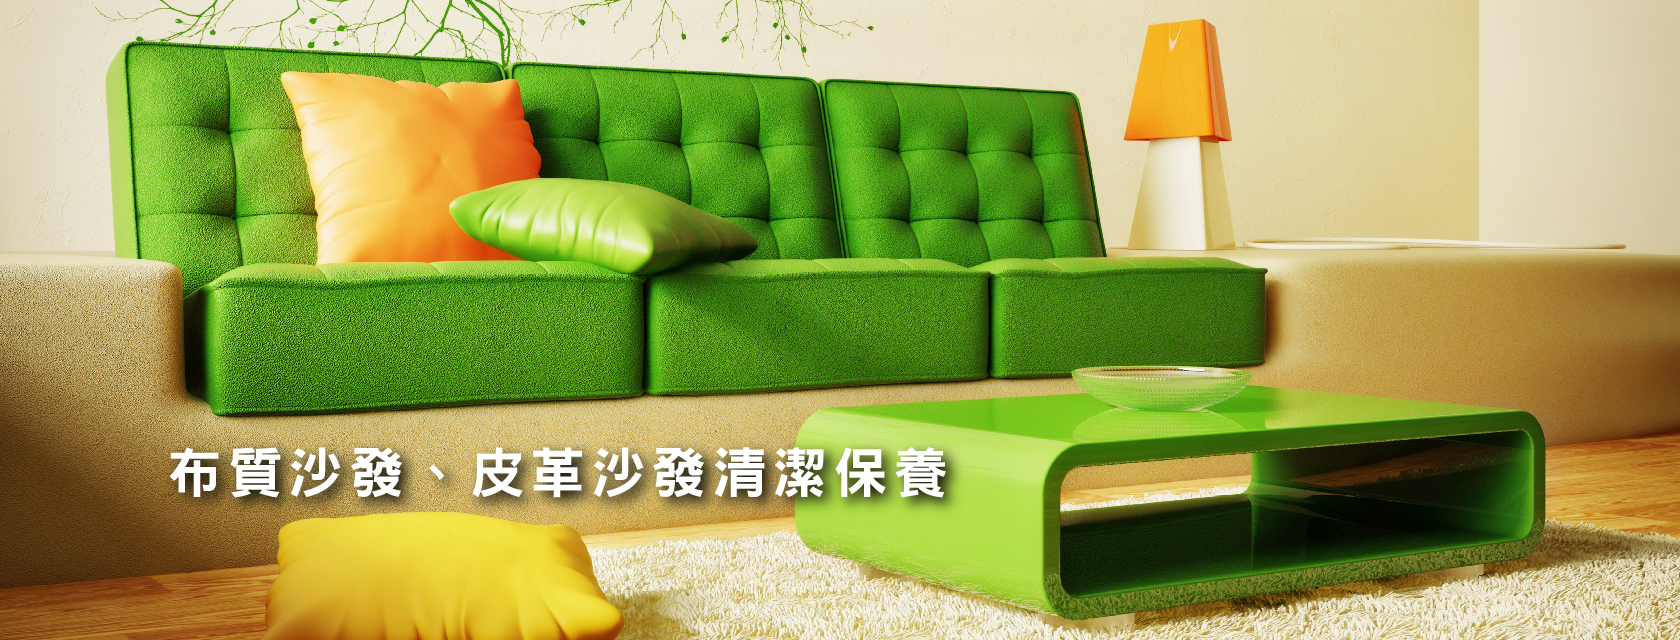 pic_3_高雄台南屏東地毯沙發清潔,高雄清潔公司,住家地毯清潔,商辦地毯清潔,高雄辦公室清潔,辦公椅清潔